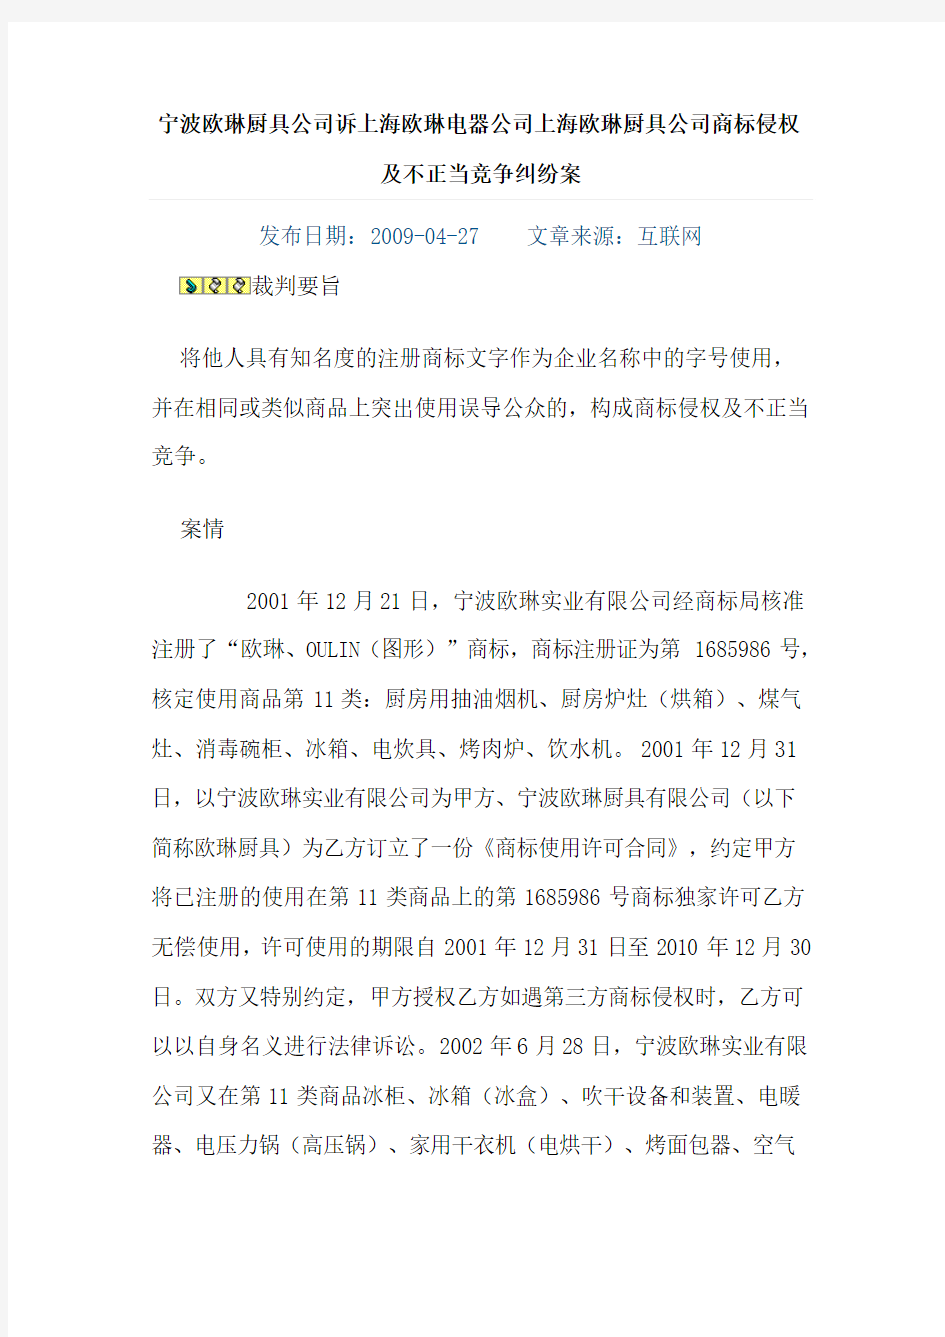 宁波欧琳厨具公司诉上海欧琳电器公司上海欧琳厨具公司商标侵权及不正当竞争纠纷案